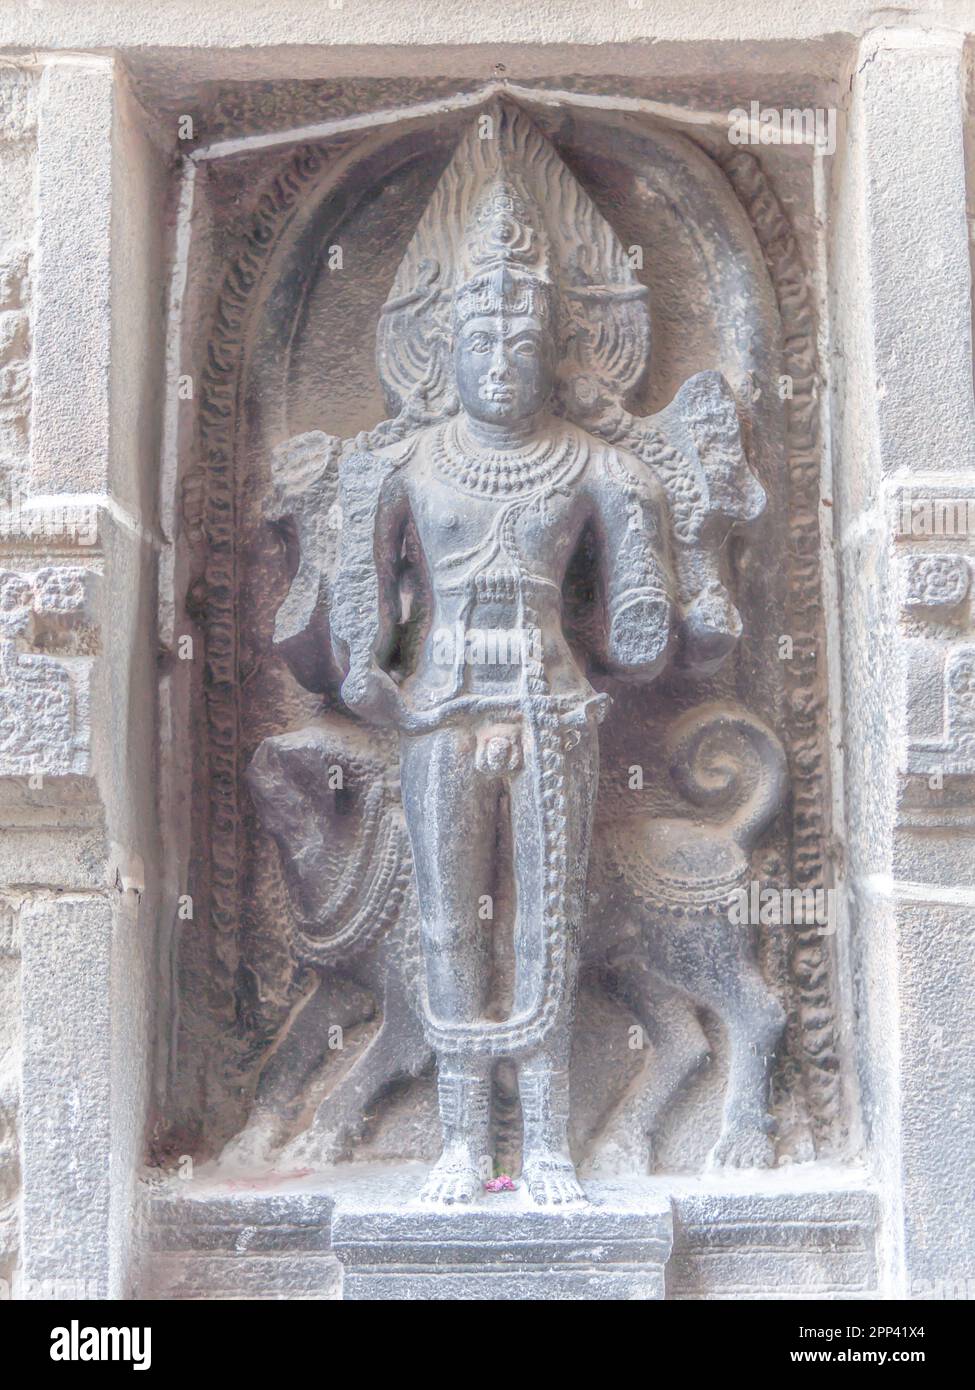 In alto, la magnifica statua del Tempio di Chidambaram raffigura la Santa manifestazione del Signore Shiva in una forma seducente e affascinante. Foto Stock